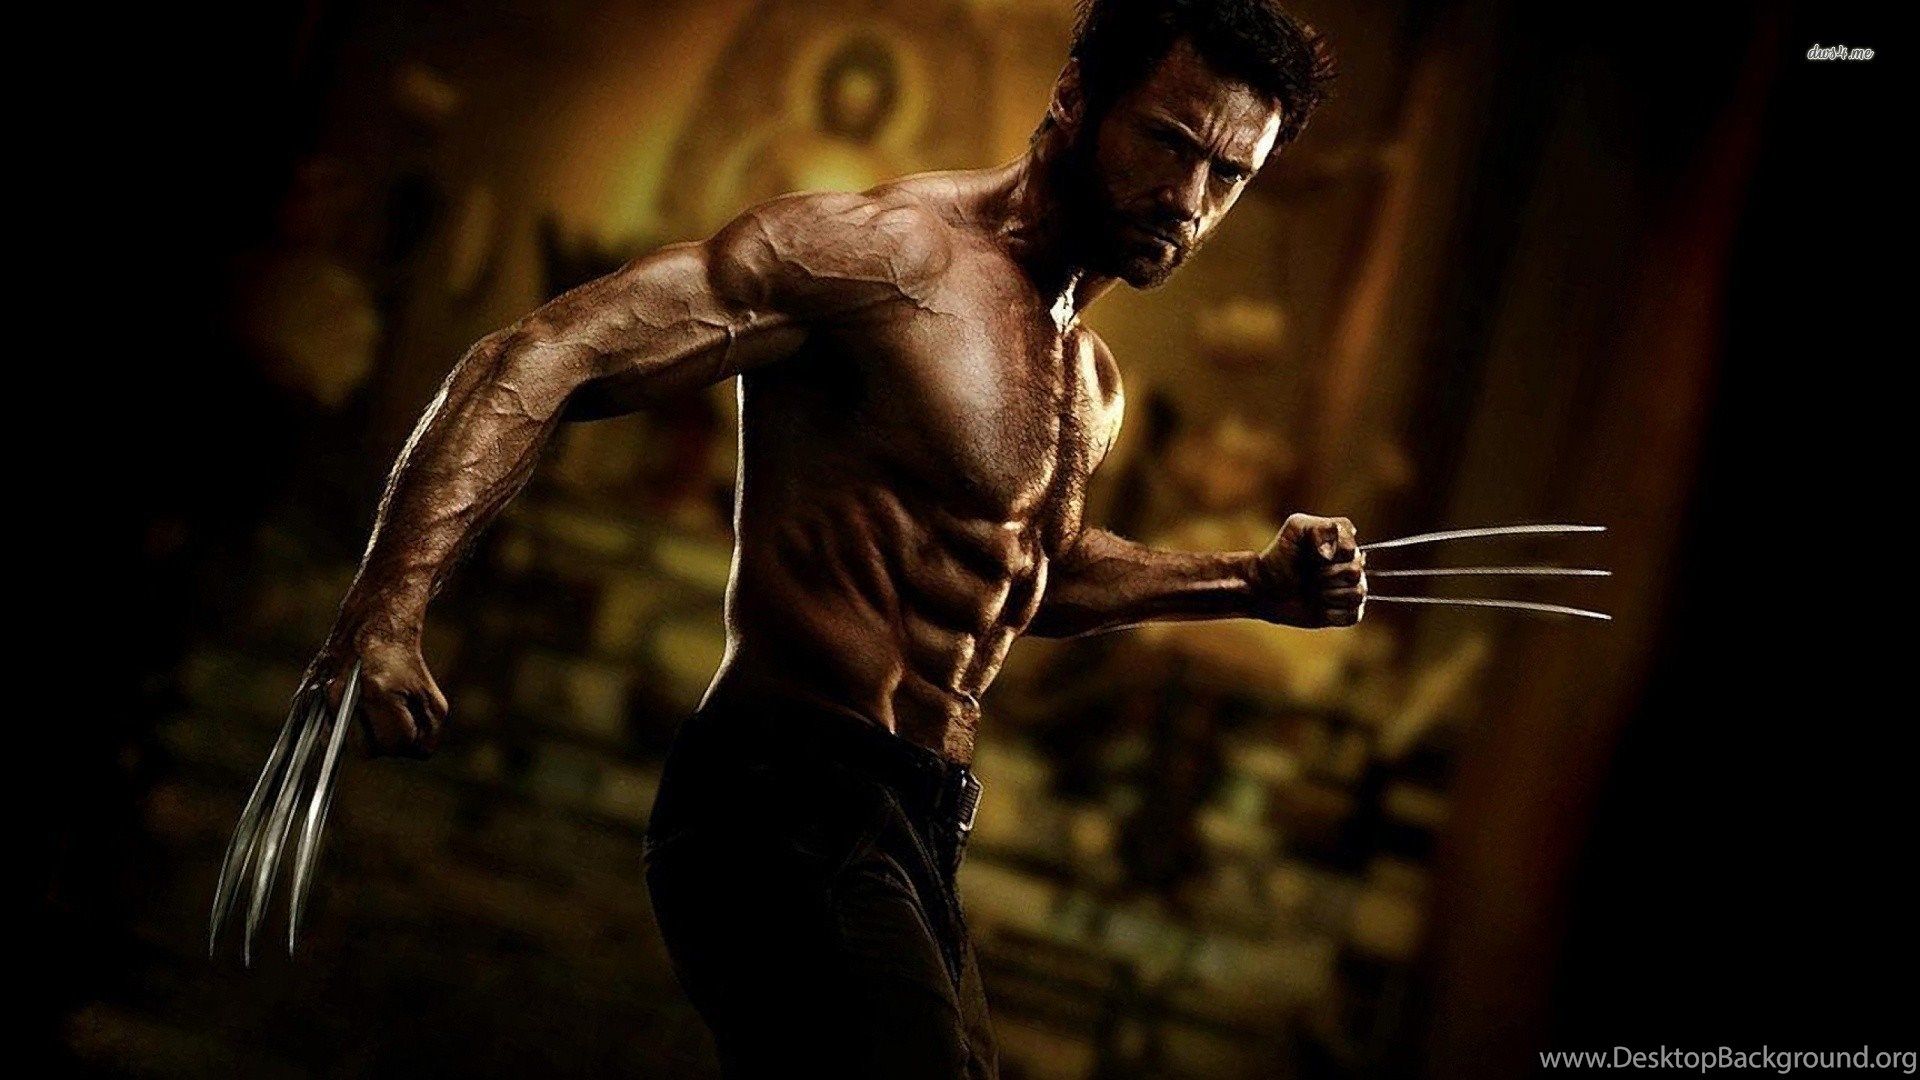 The Wolverine Wallpaper Movie Wallpaper Desktop Background